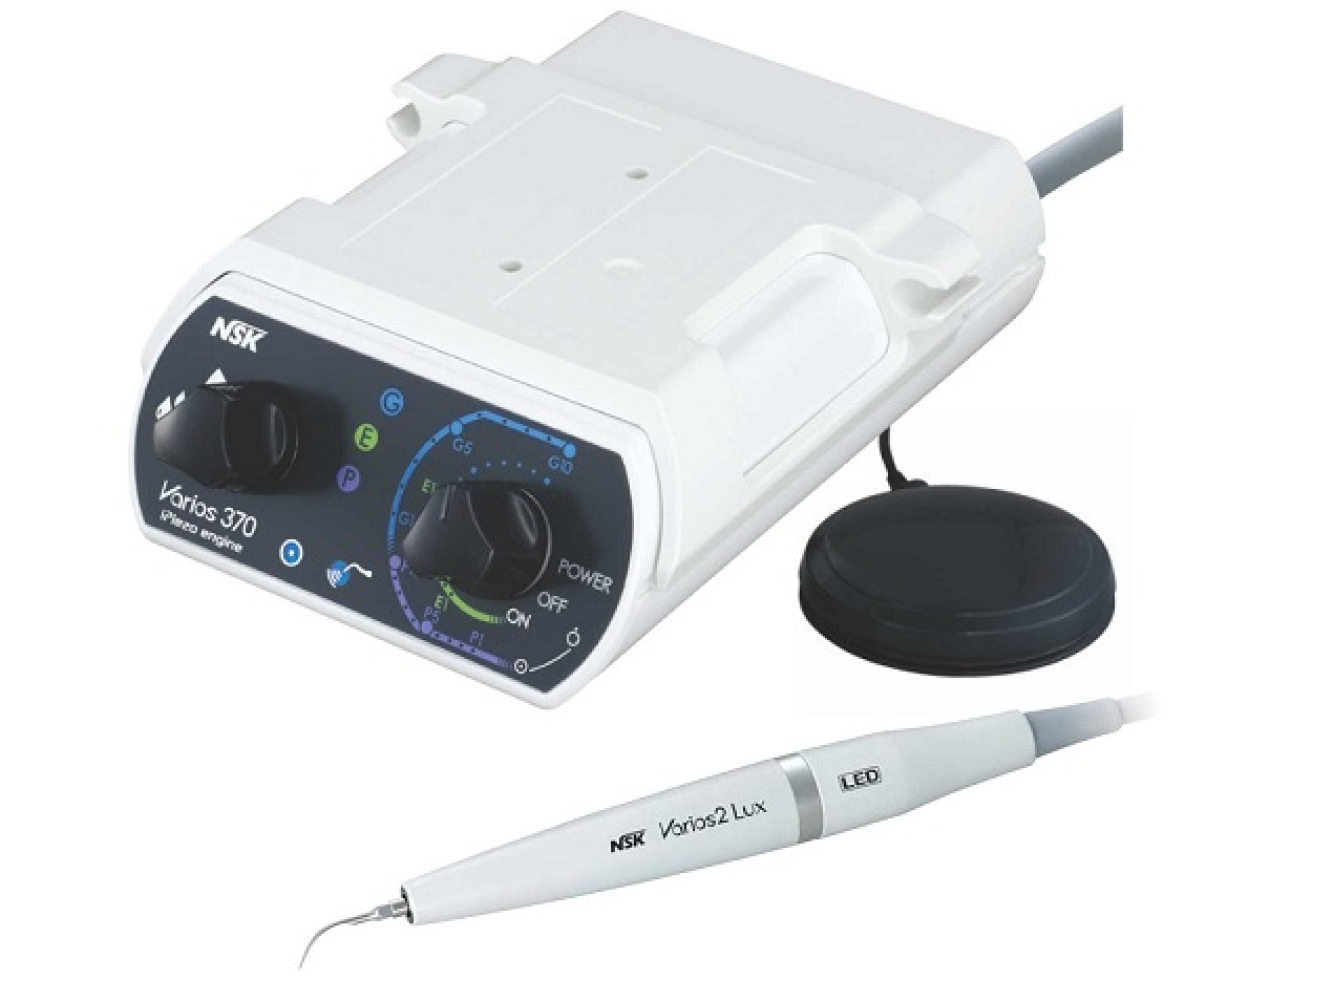 Y1001-343 Стоматологическая портативная система Varios 370 LUX с оптикой LED, NSK (Япония)